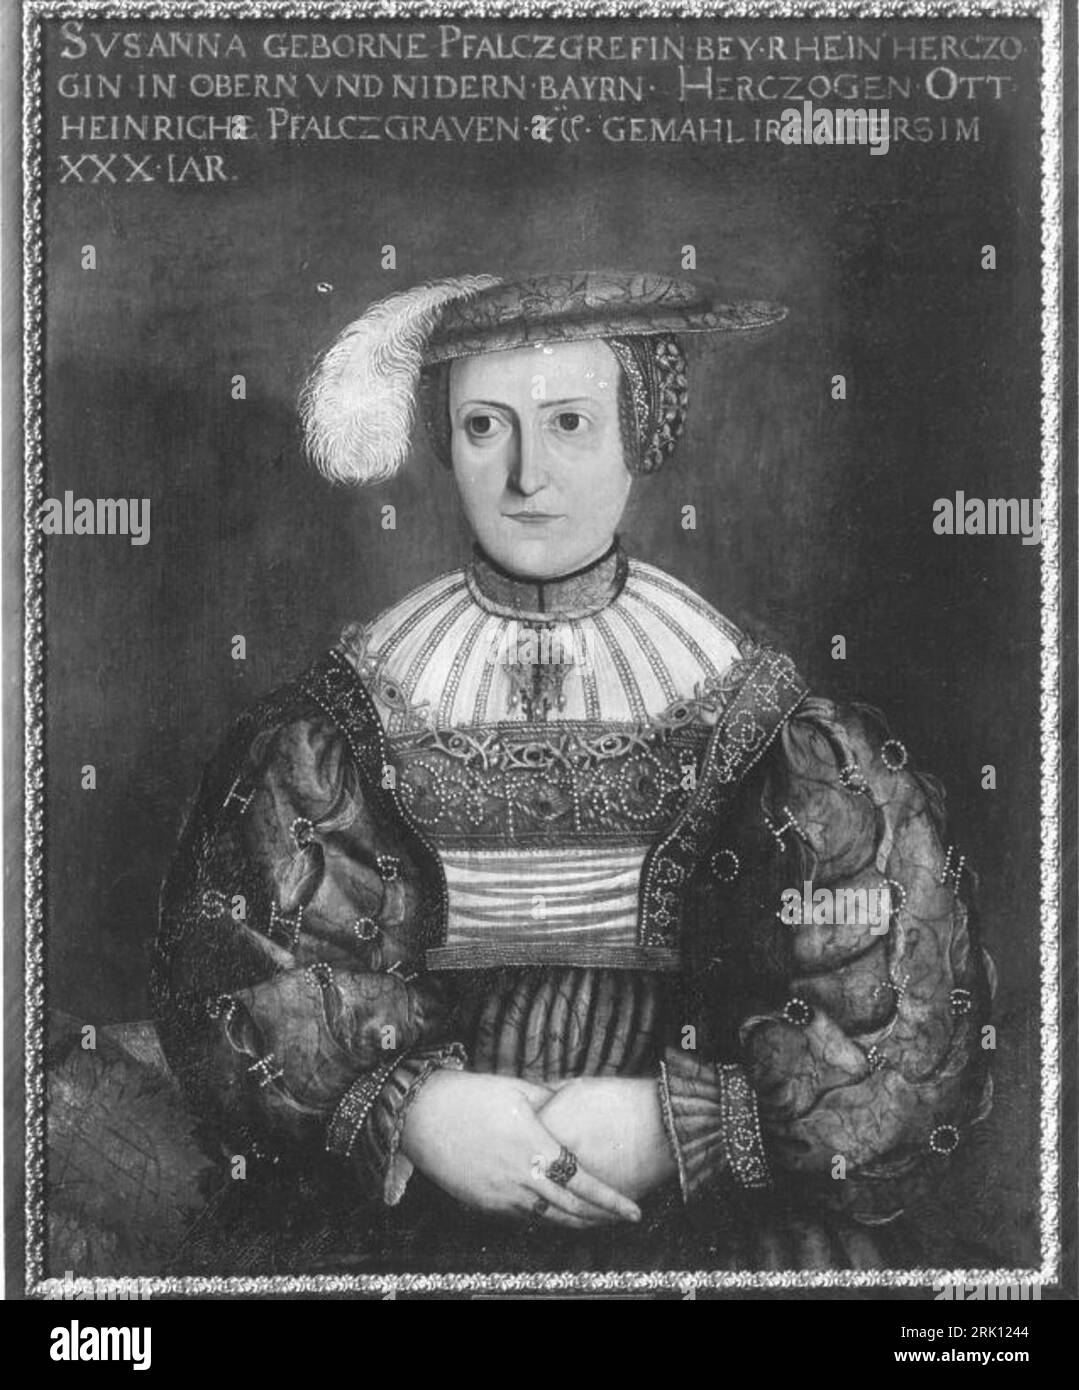 Portrait of Susanna of Bavaria (Susanna Geborne Pfalczgrefin Bey.Rhein Herczogin in Obern und Nidern Bayrn) circa 1532 by Peter Gertner Stock Photo